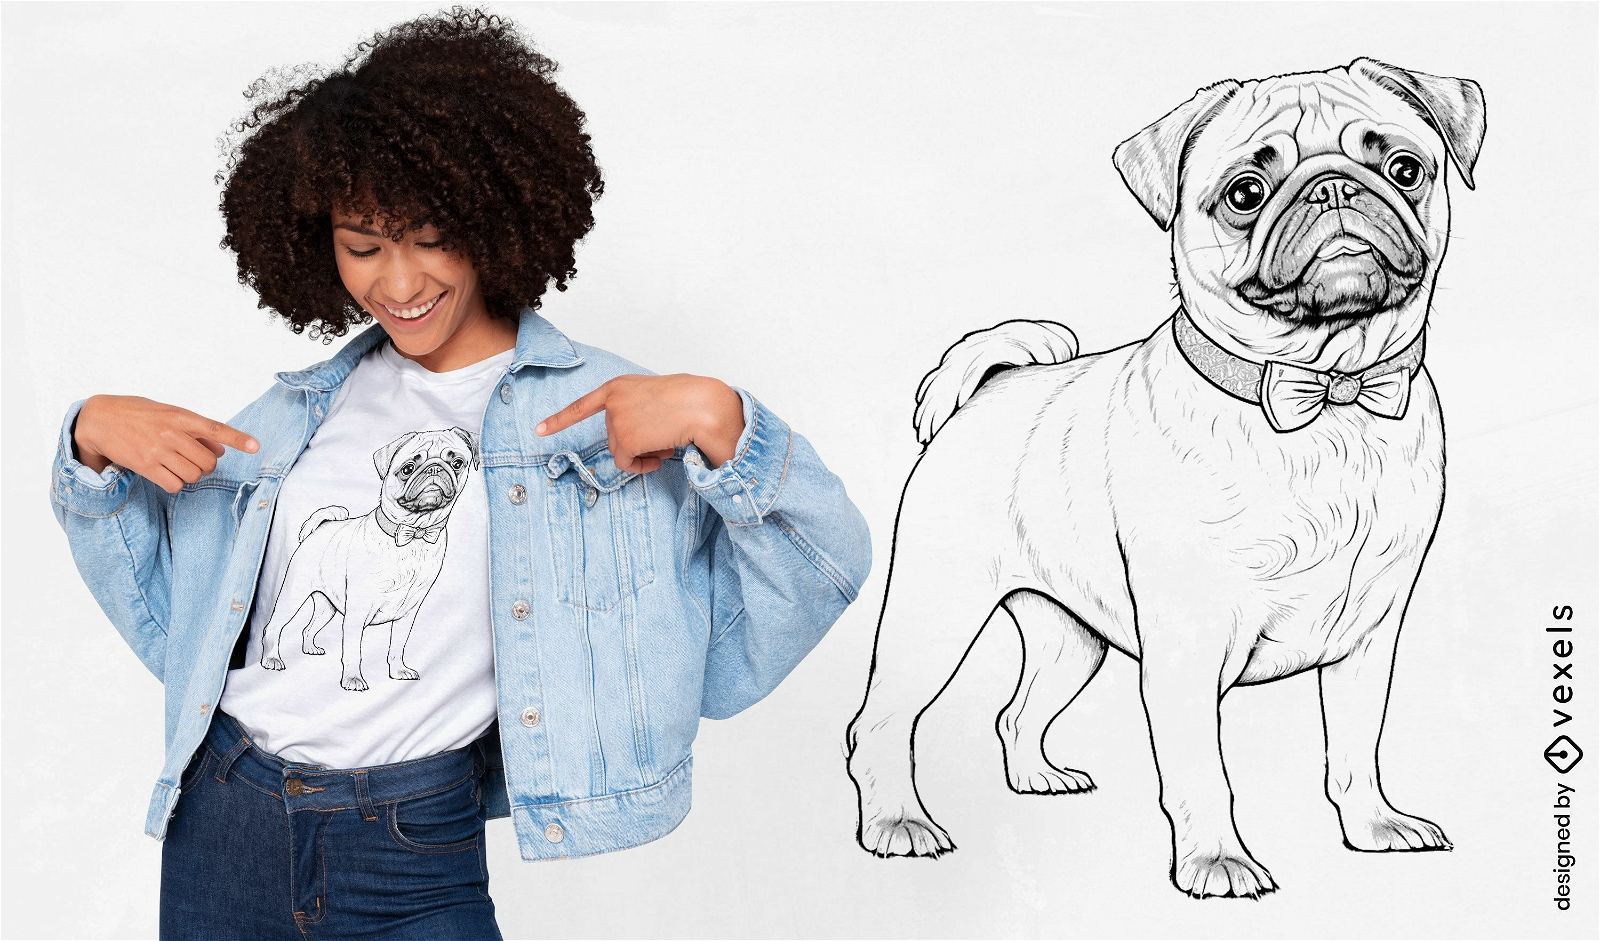 Encantador diseño de camiseta de perro pug.